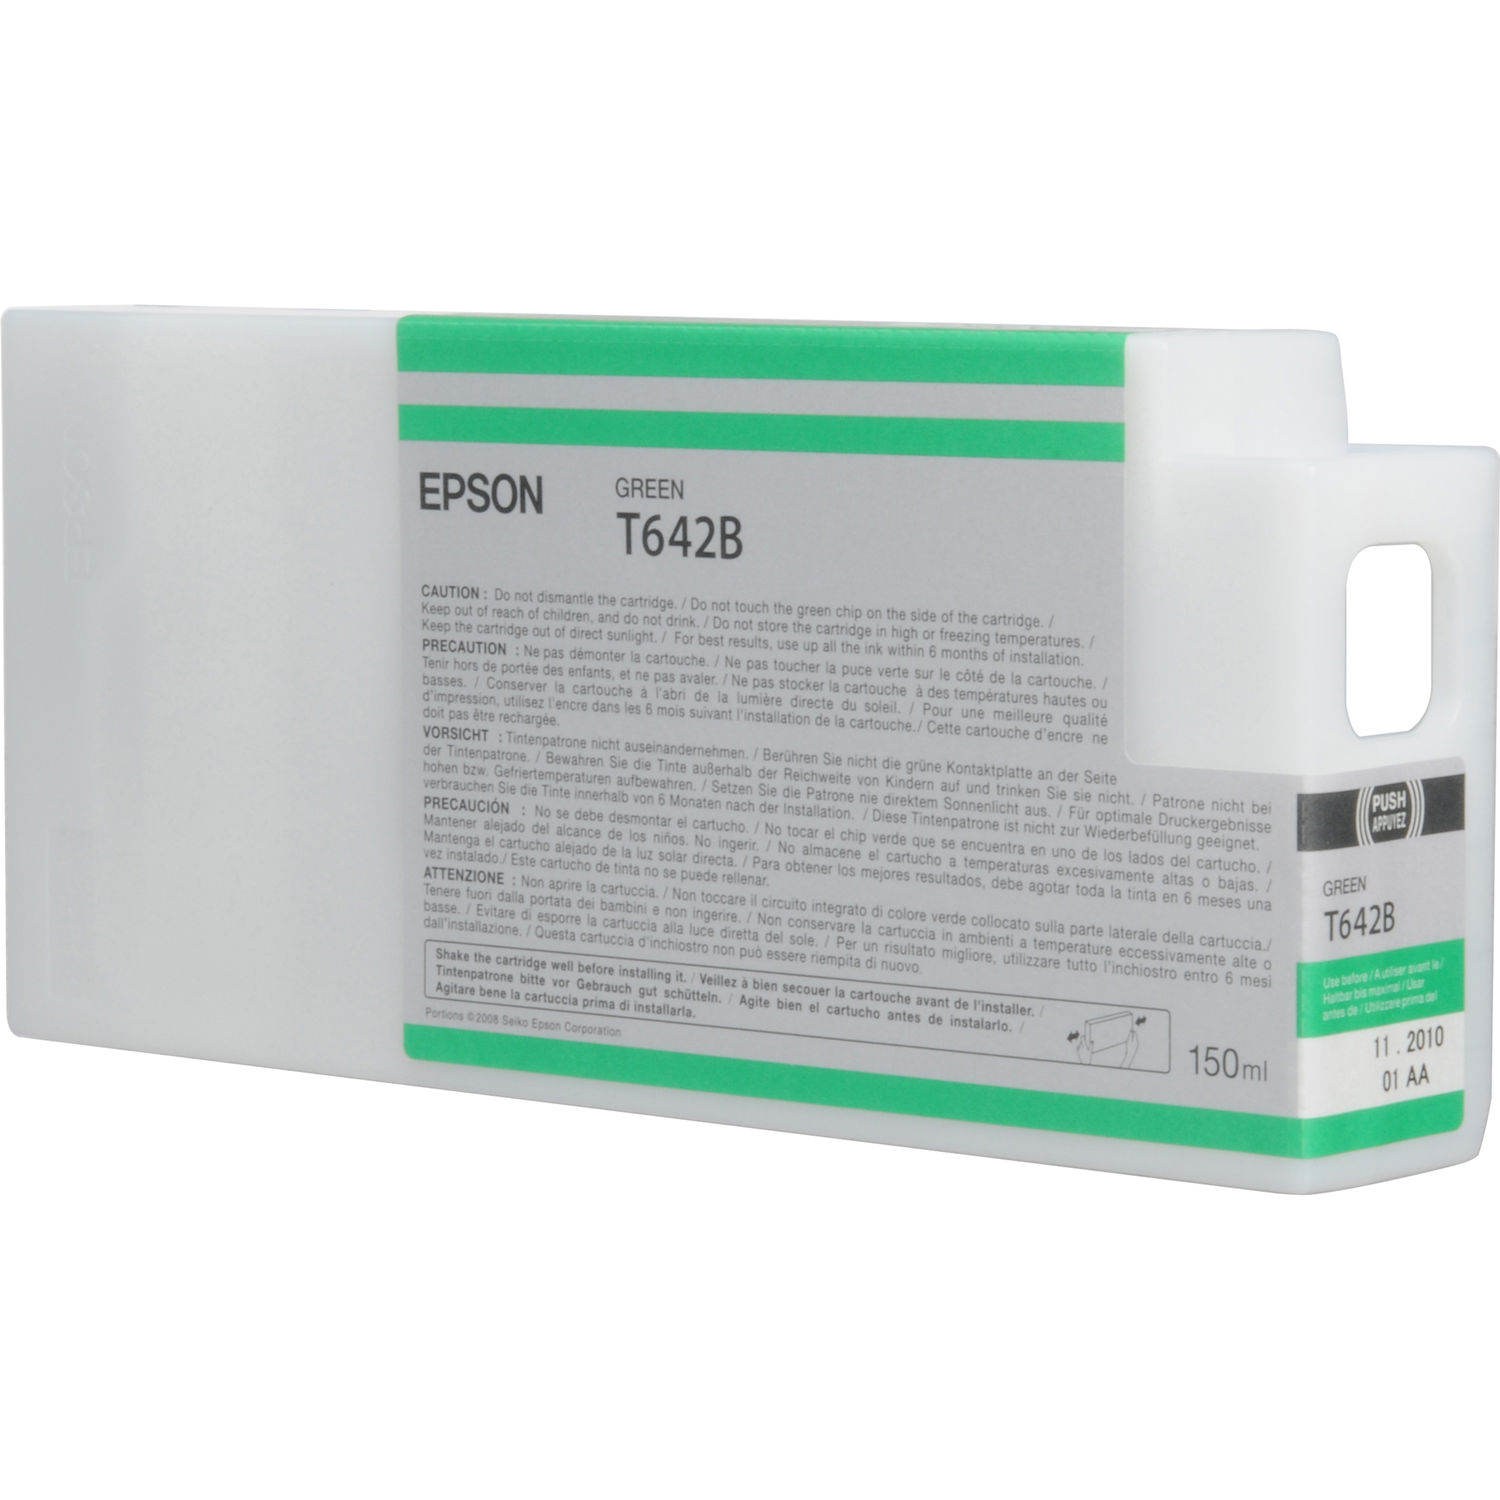 Cartucho de Tinta Epson T642B00 Green Ultrachrome Hdr para Impresoras Stylus Pro Seleccionadas 150